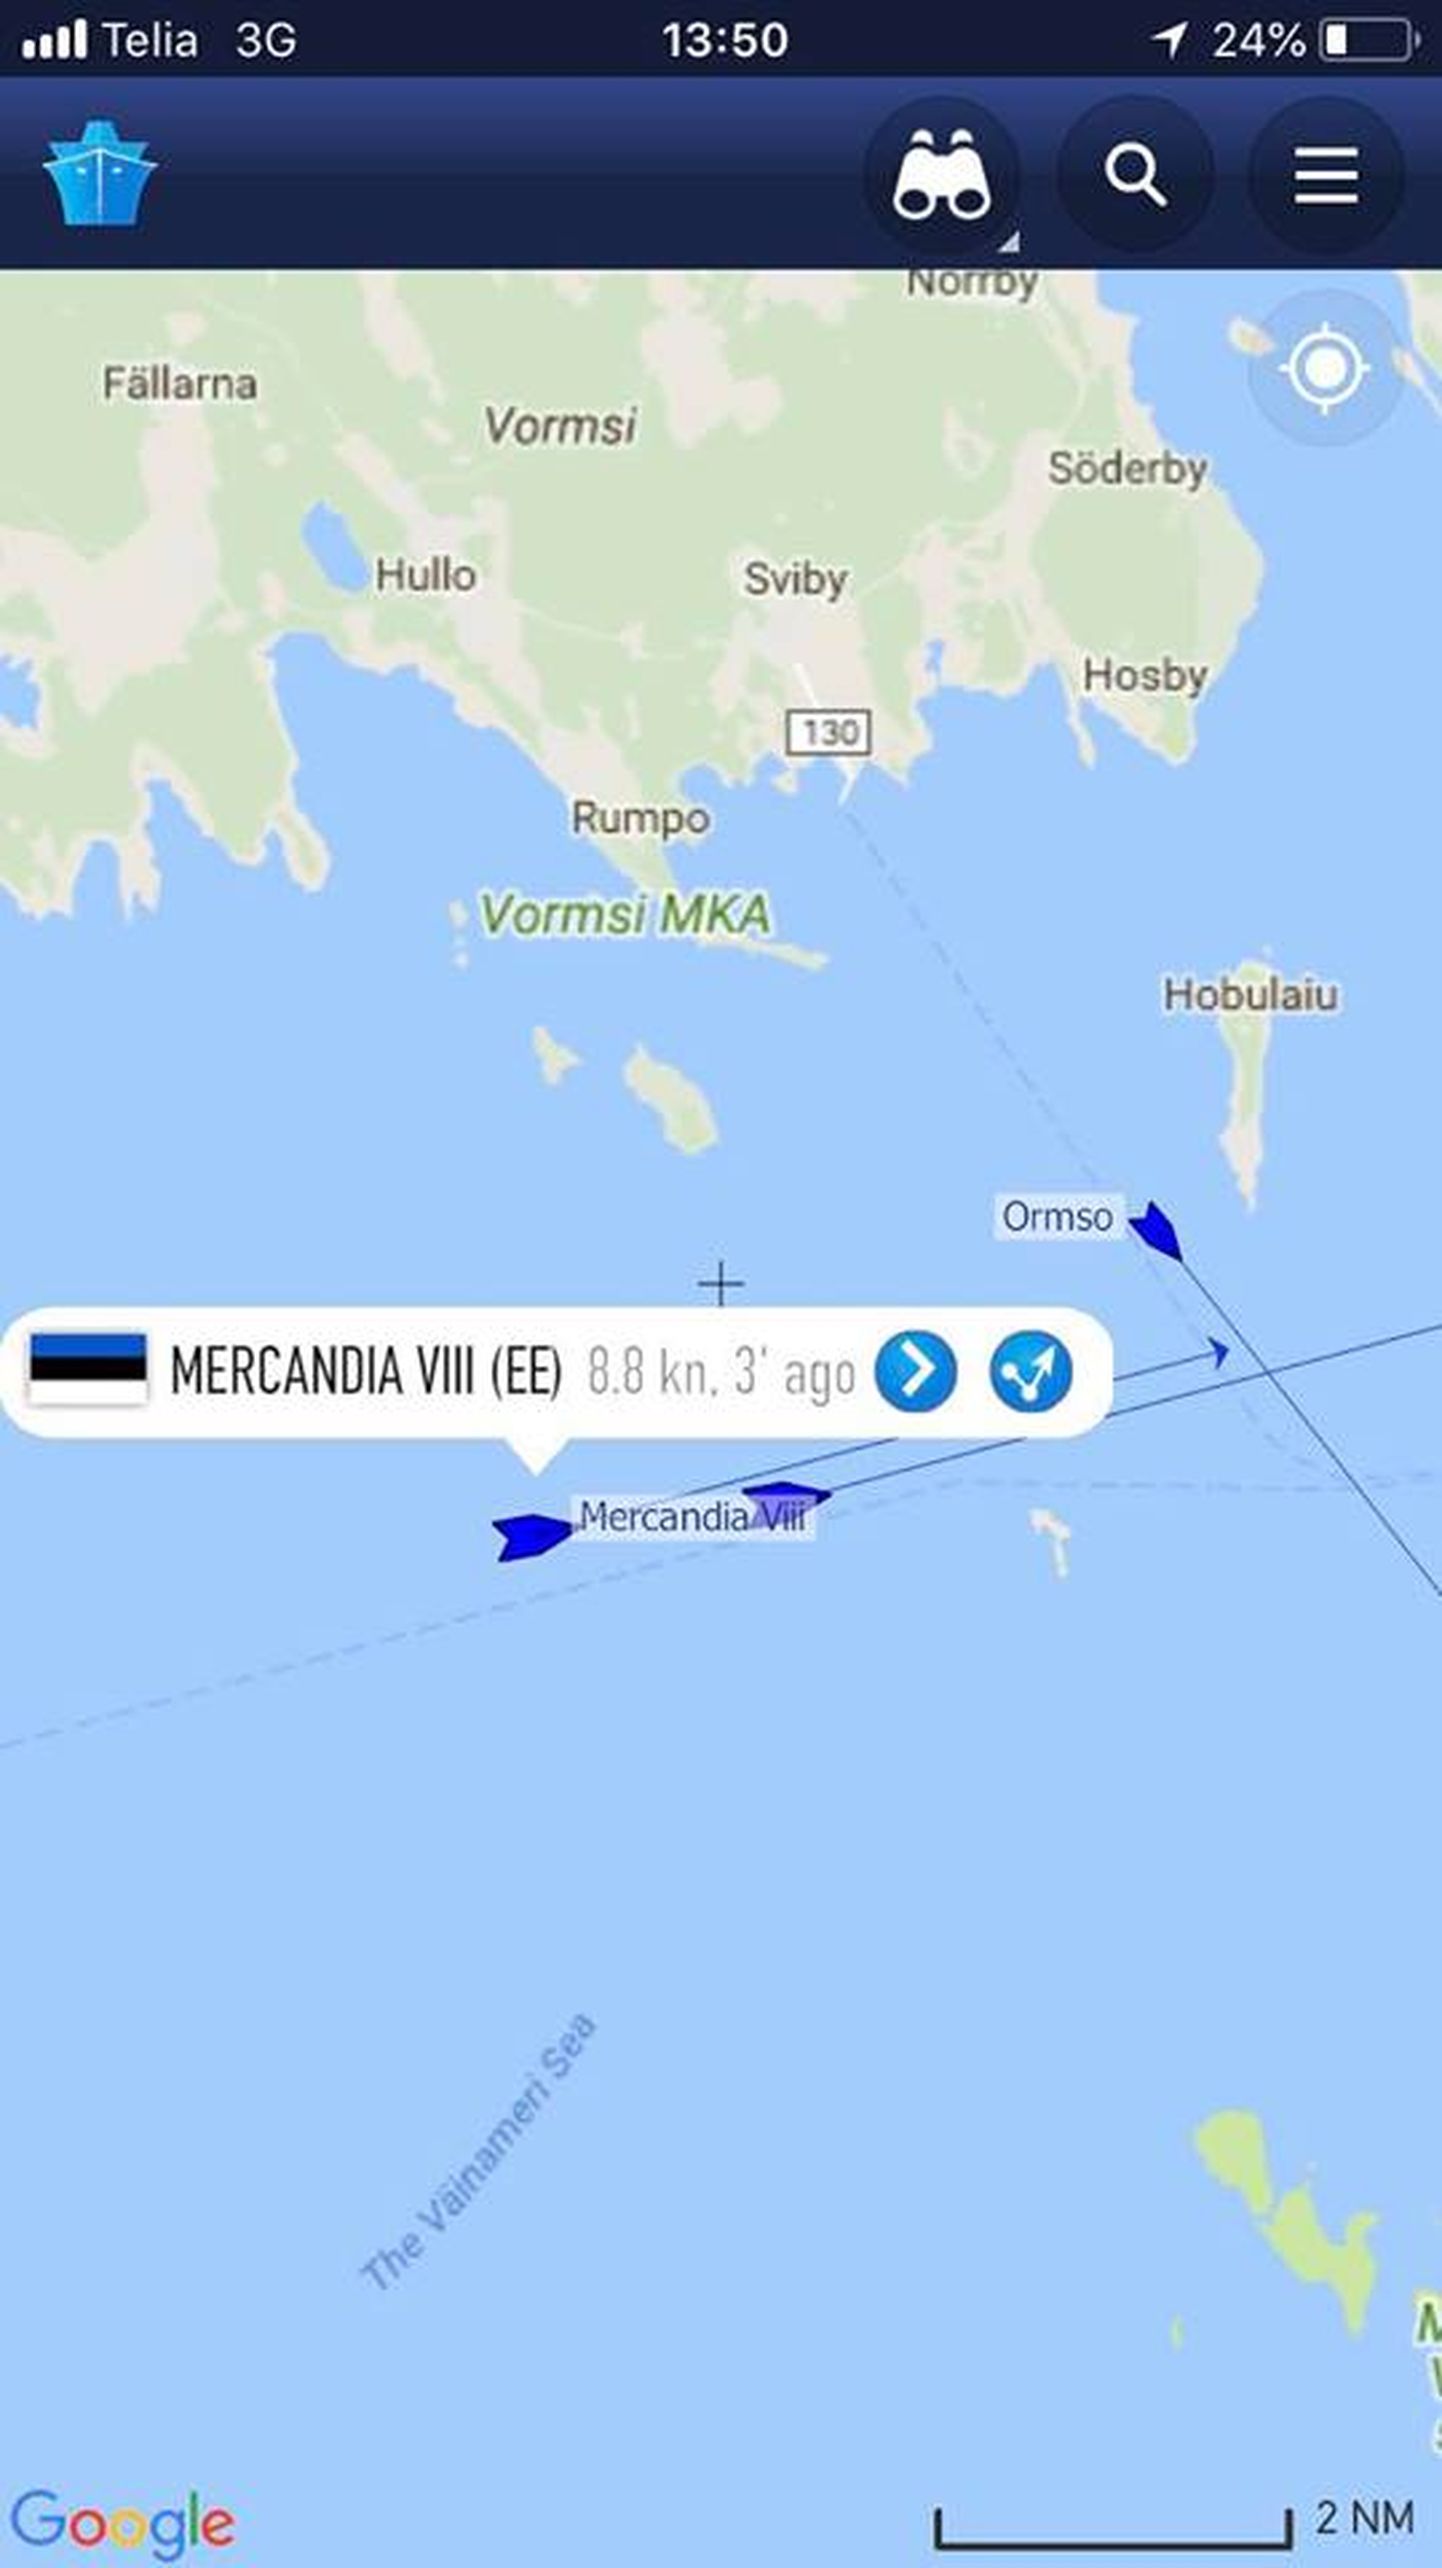 Mercandia liigub Tiiu tuules kanalisse.